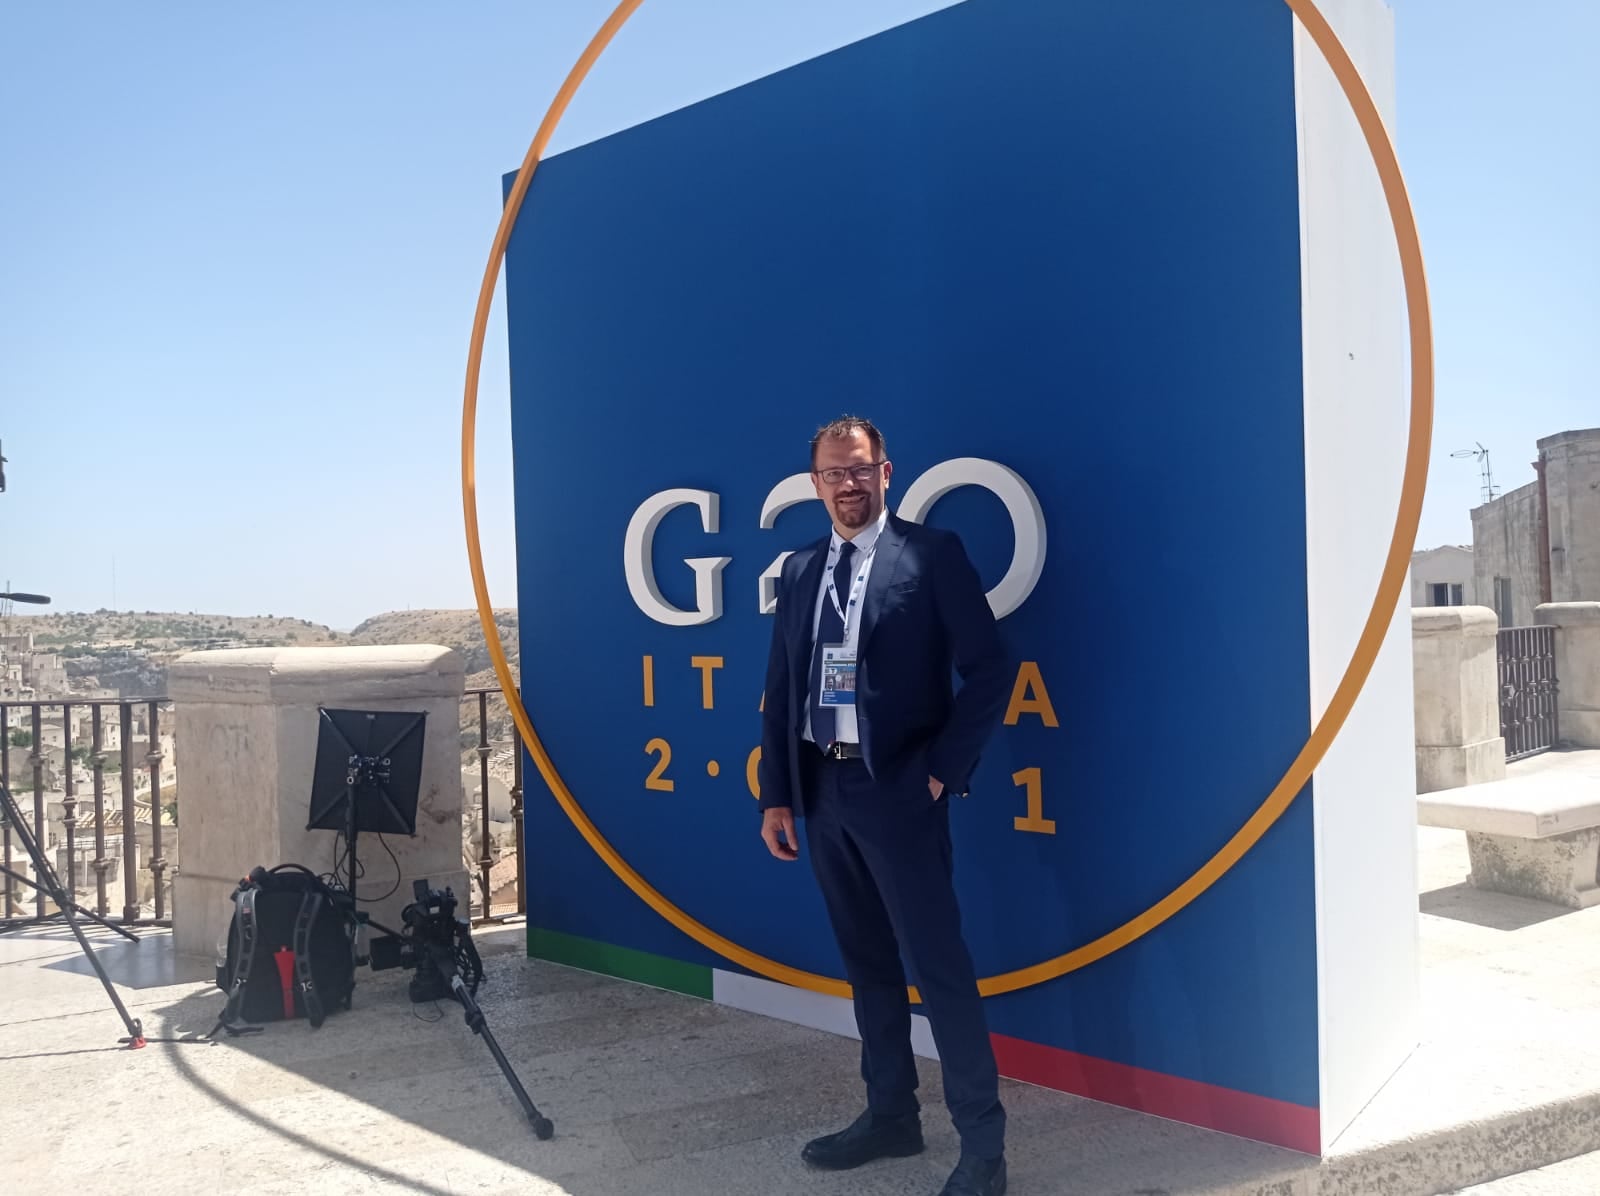 G20 a Matera: il sindaco Bennardi condivide con la città gli apprezzamenti e gli elogi ricevuti per l’organizzazione, giudicata impeccabile